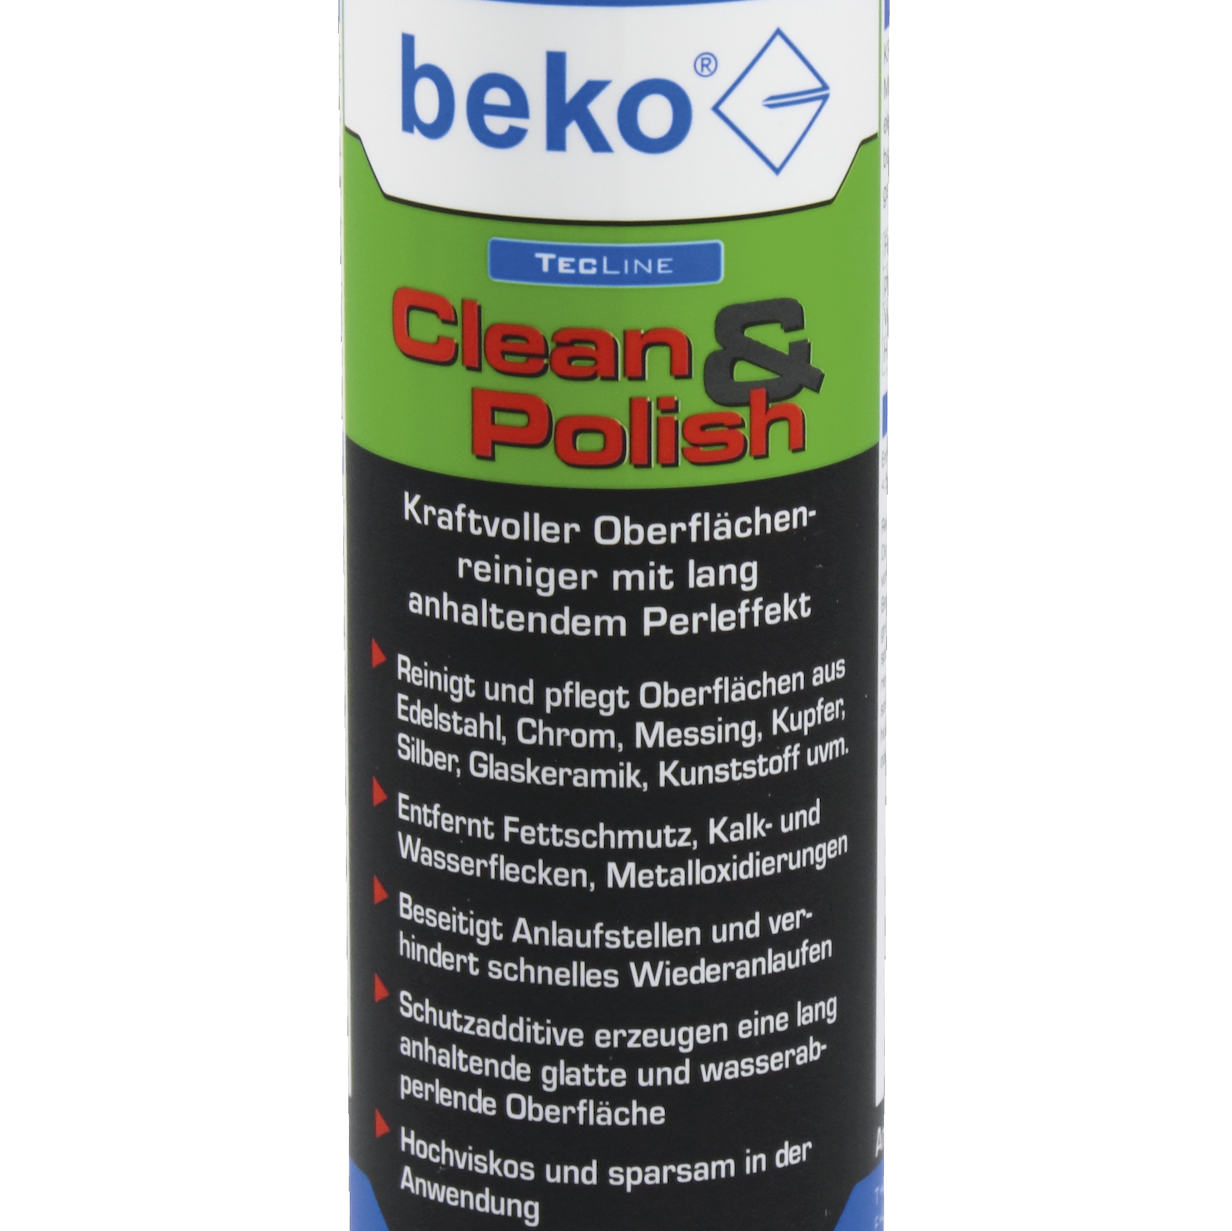 beko® TecLine Clean & Polish